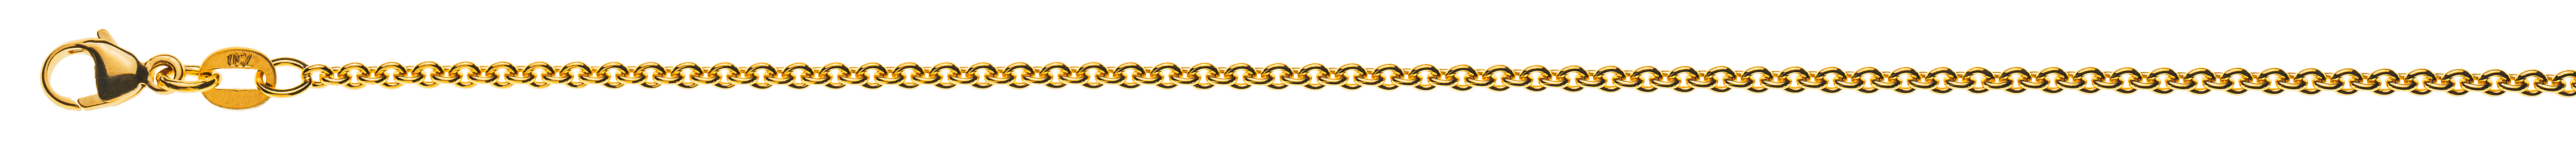 AURONOS Prestige Halskette Gelbgold 18K Rundanker 42cm 1.9mm